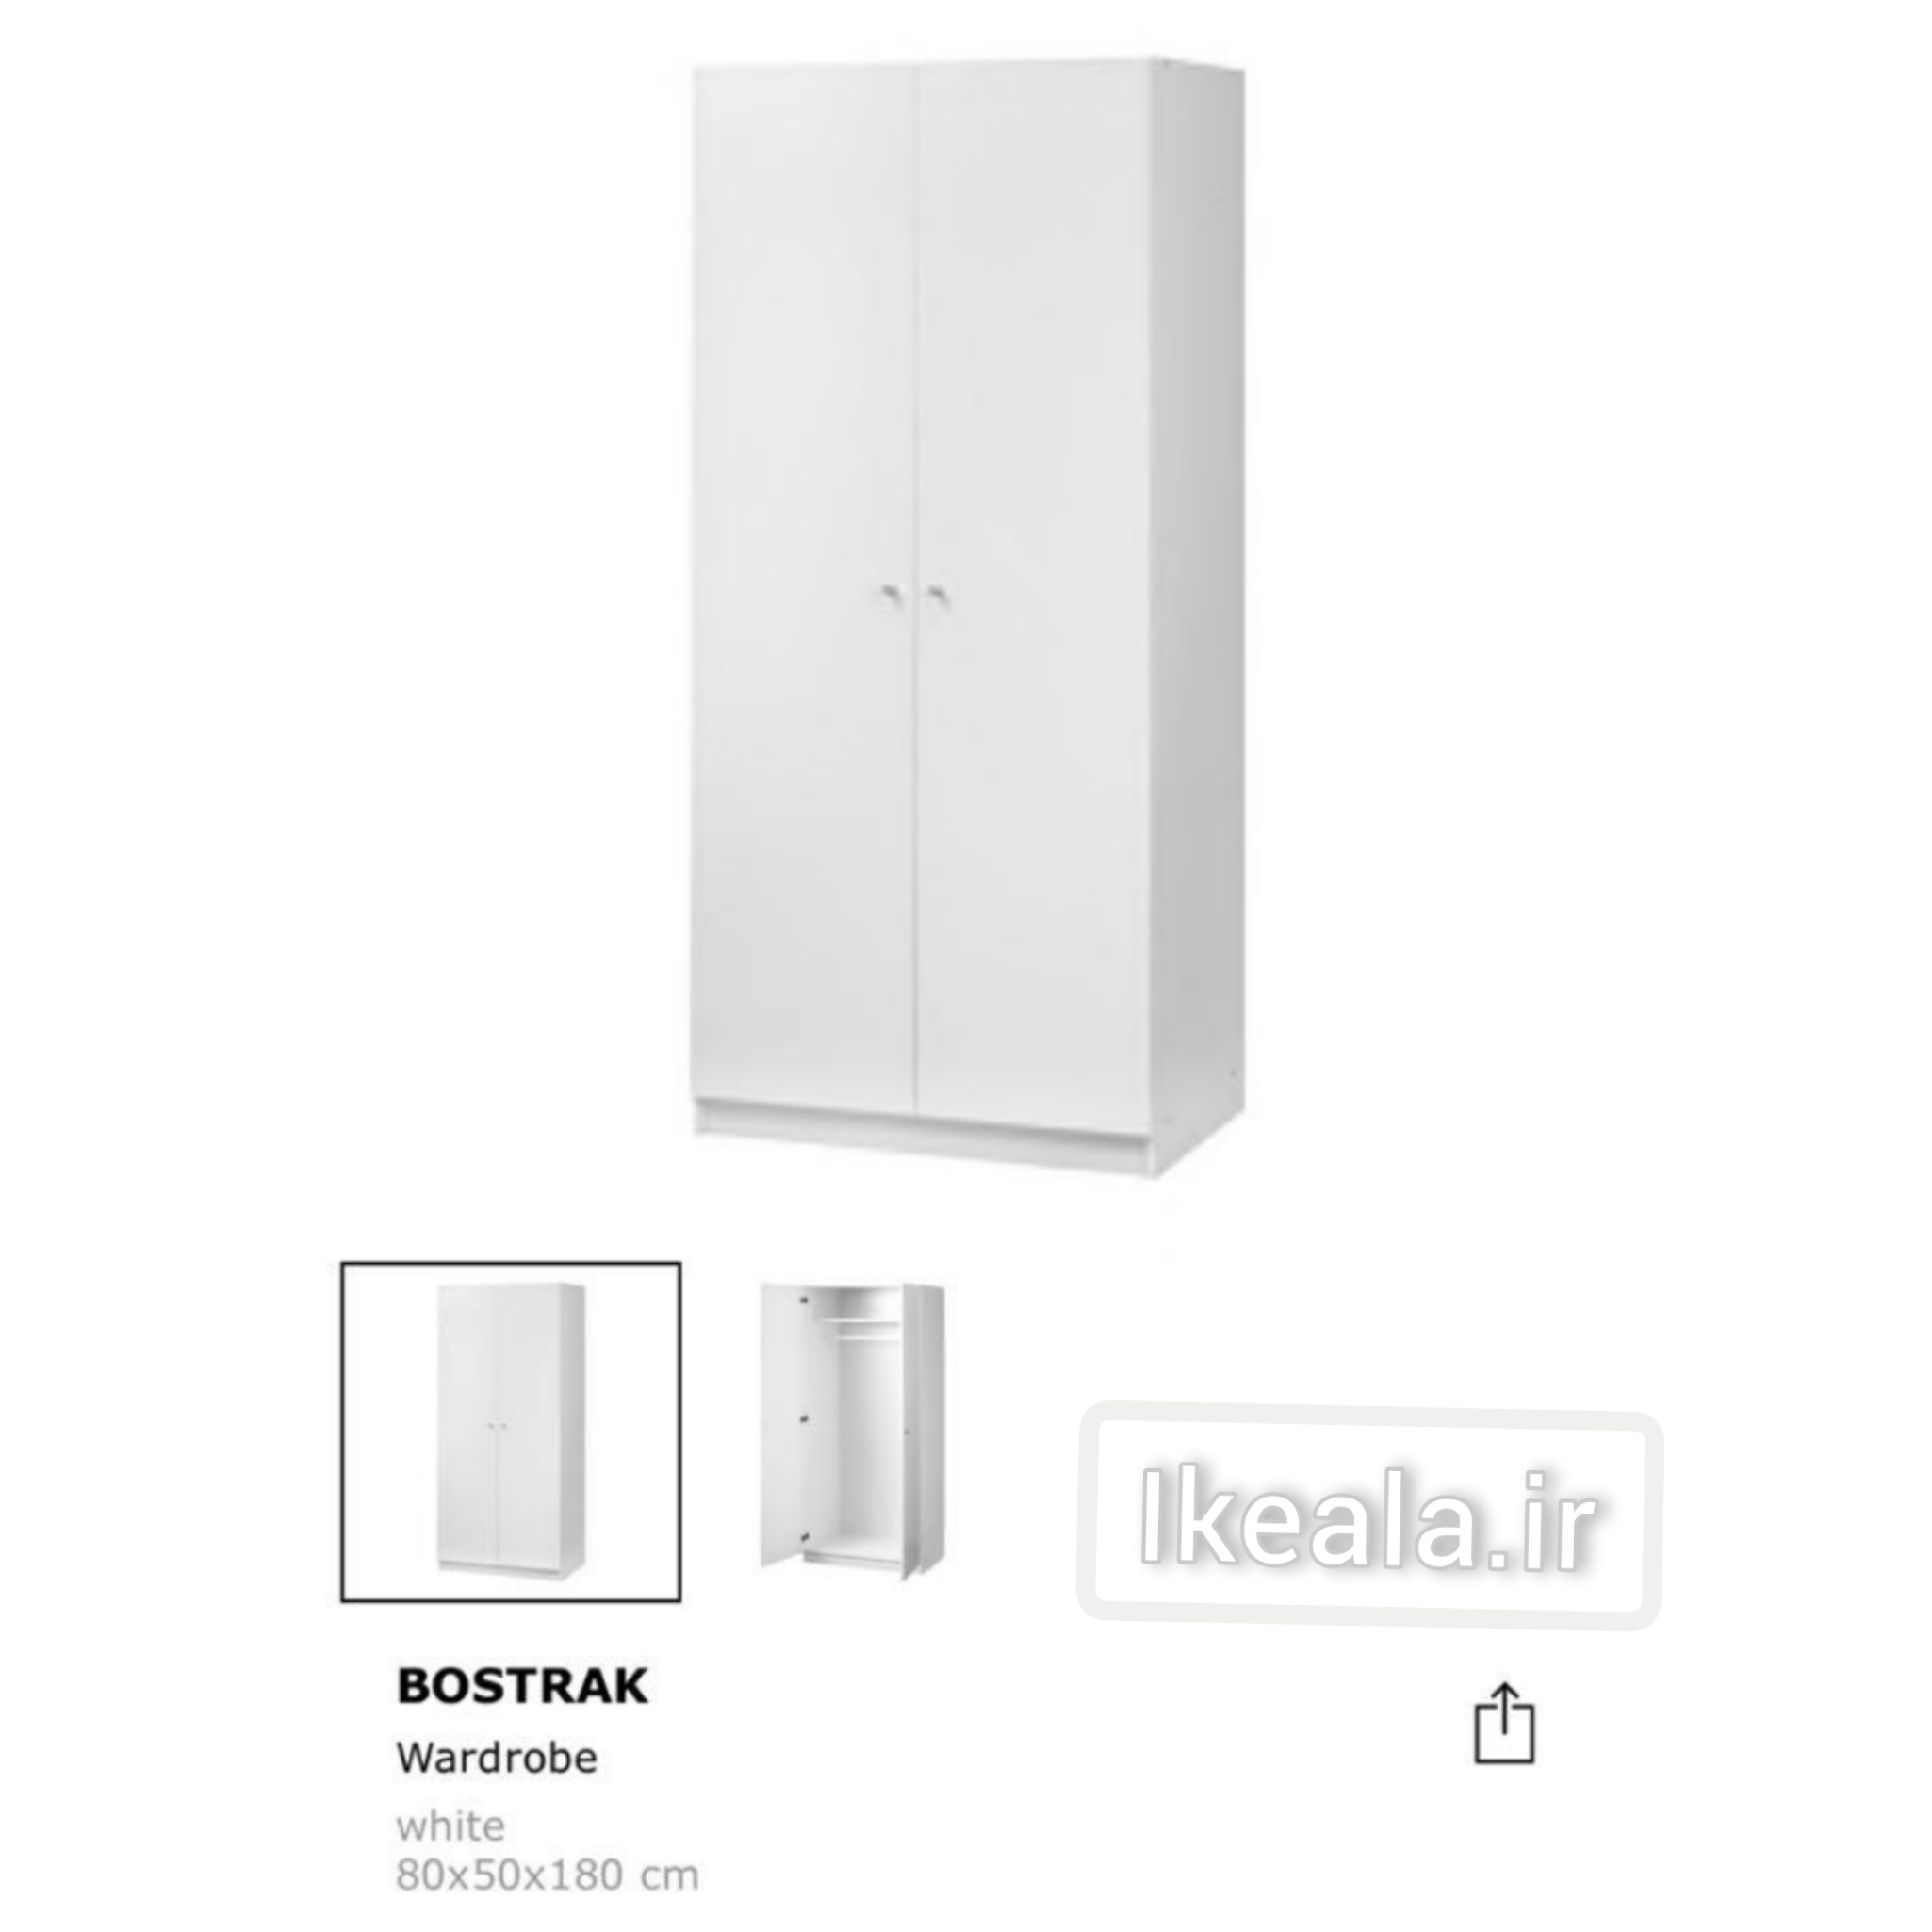  کمد ایکیا مدل Ikea BOSTRACK کد کالا : 203.349.03 _ رنگ : سفید _ ابعاد: ارتفاع :180 سانتیمتر عمق :50 سانتیمتر ع 